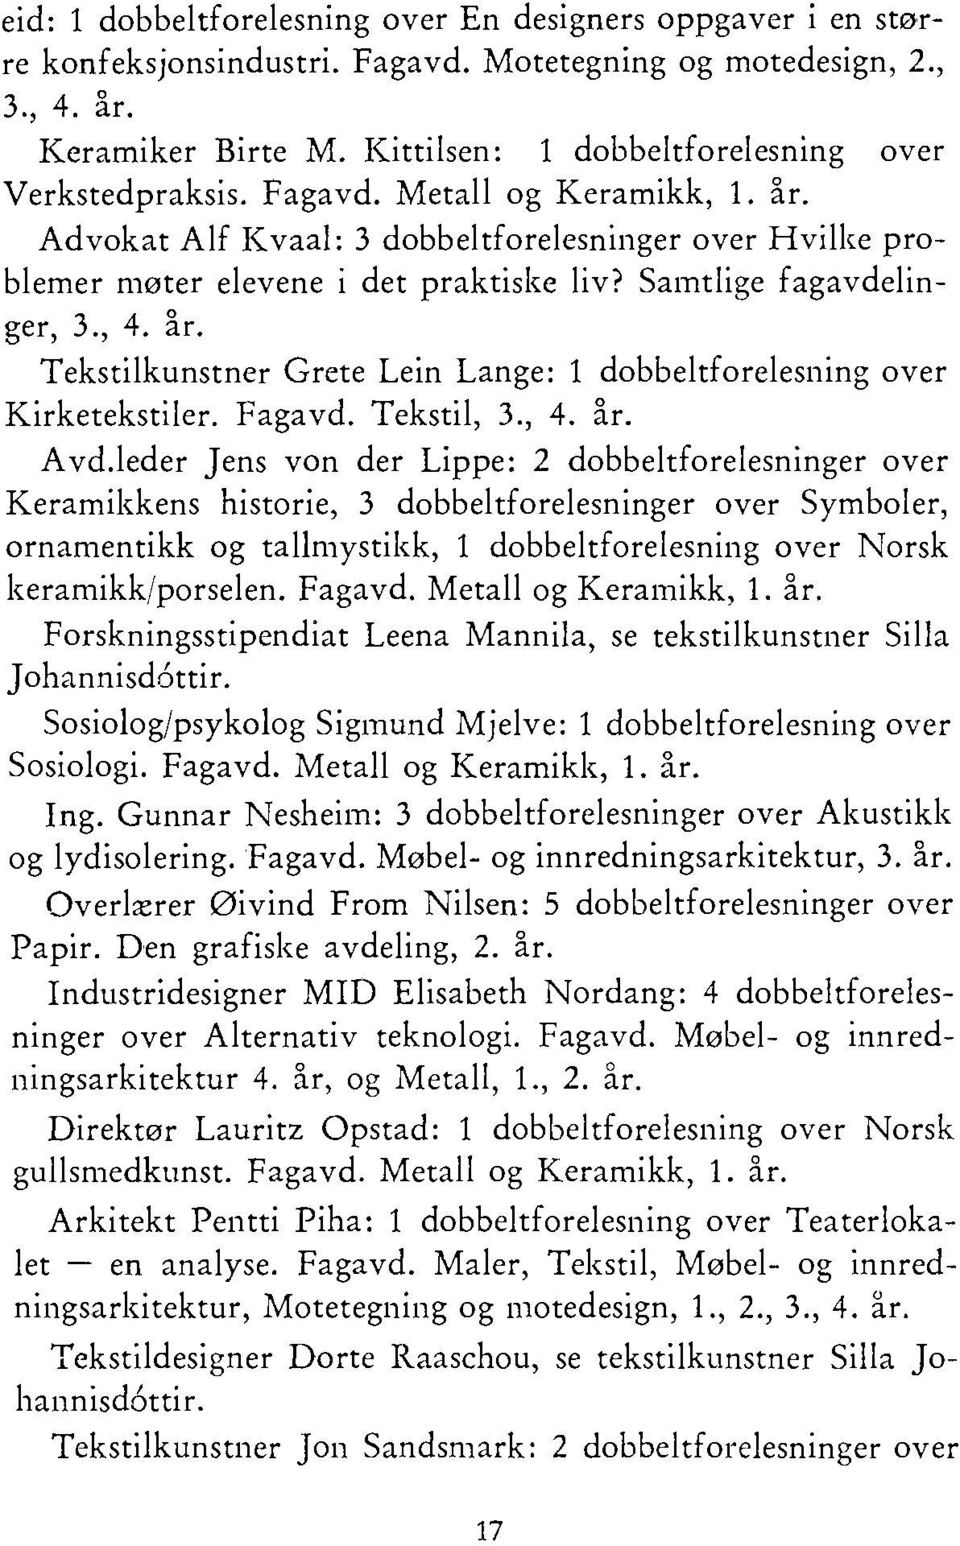 Samtlige fagavdelinger, 3., 4. år. Tekstilkunstner Grete Lein Lange: 1 dobbeltforelesning over Kirketekstiler. Fagavd. Tekstil, 3., 4. år. Avd.